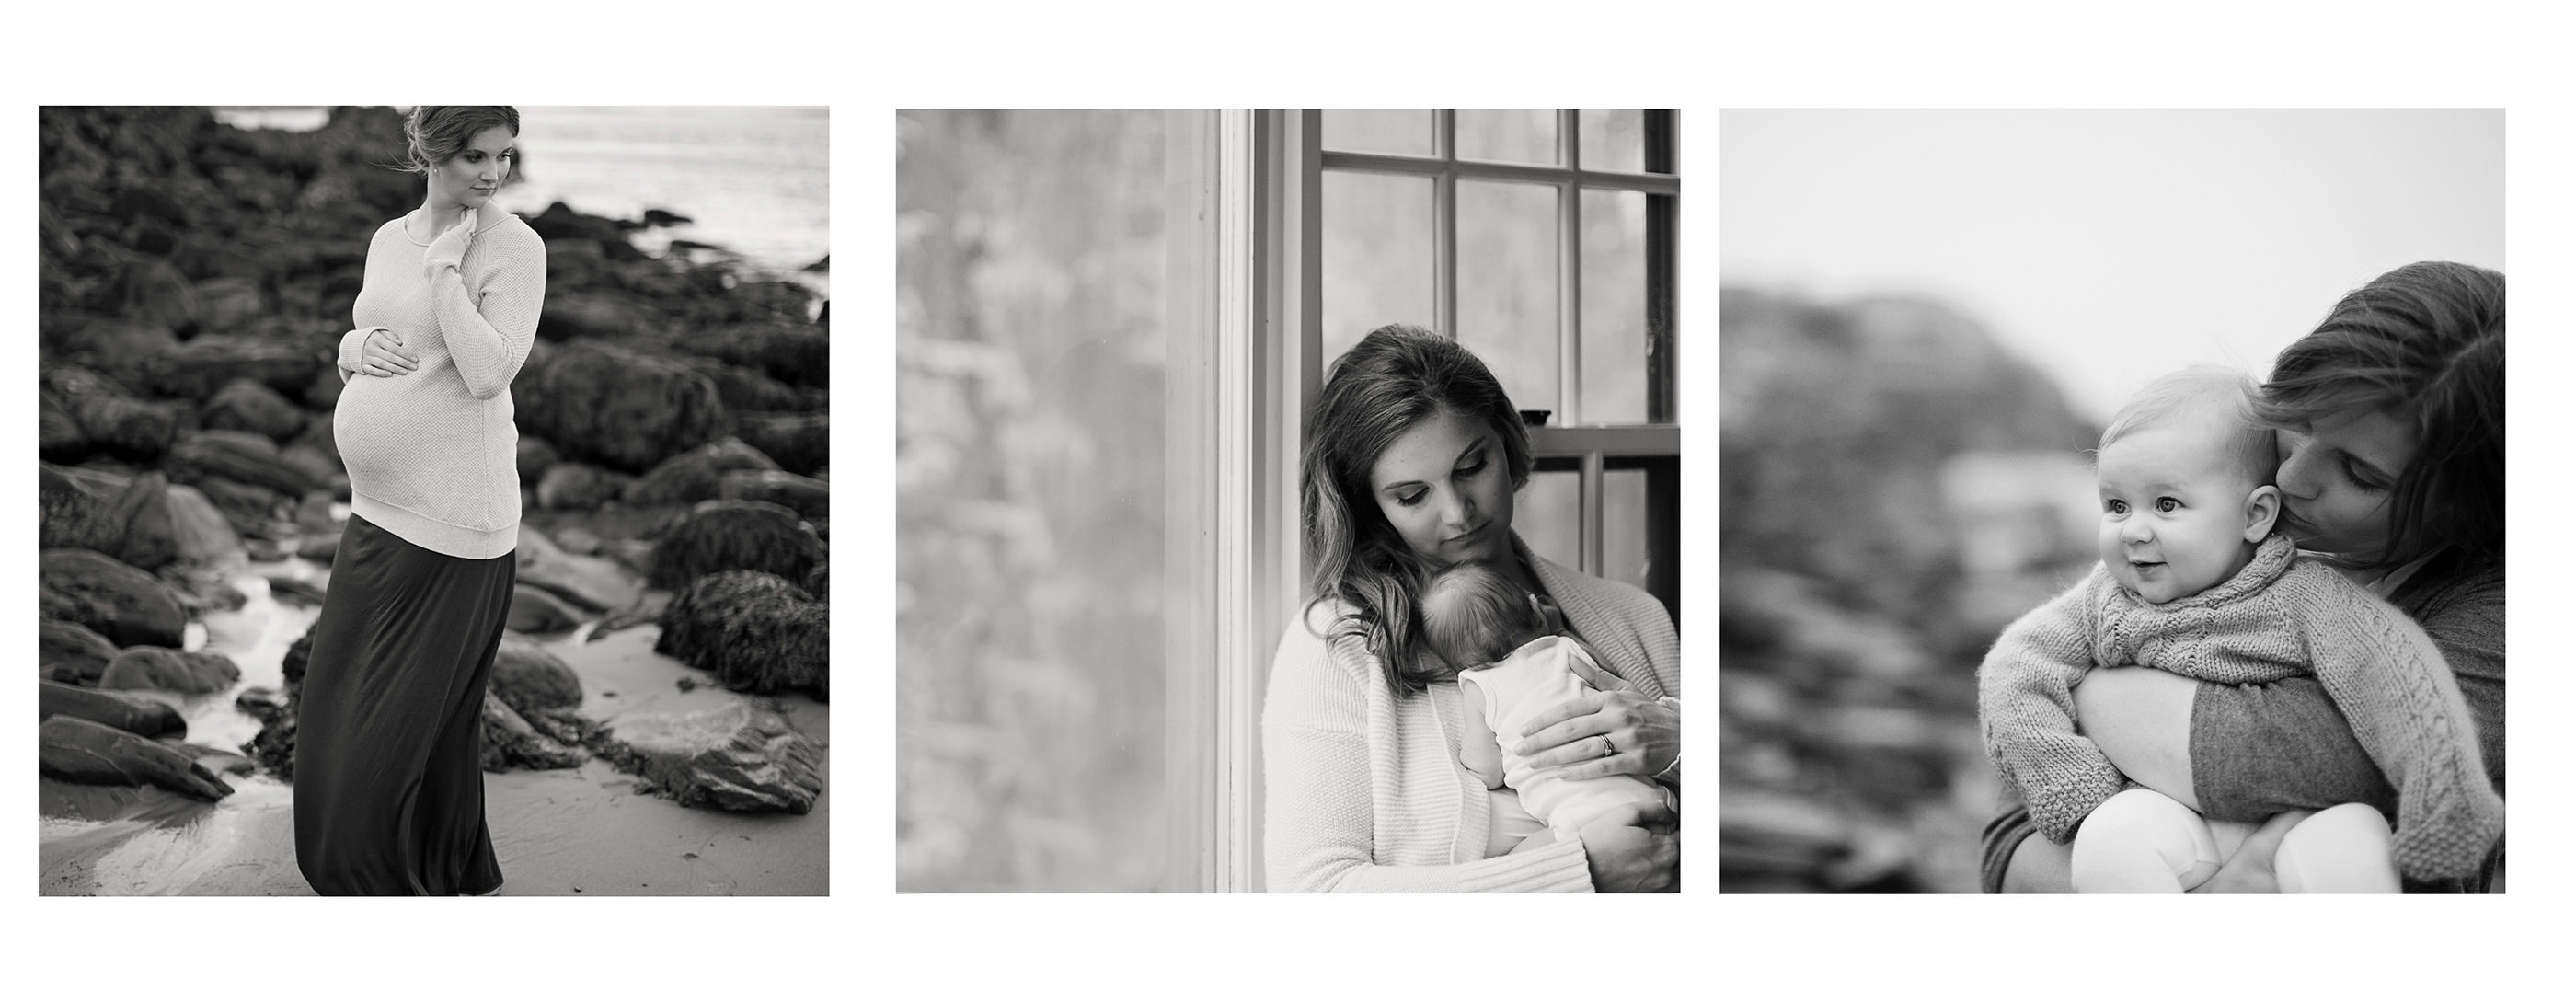 Portland Maine Maternity, Newborn, and Baby Photography by Tiffany Farley, http://tiffanyfarley.com